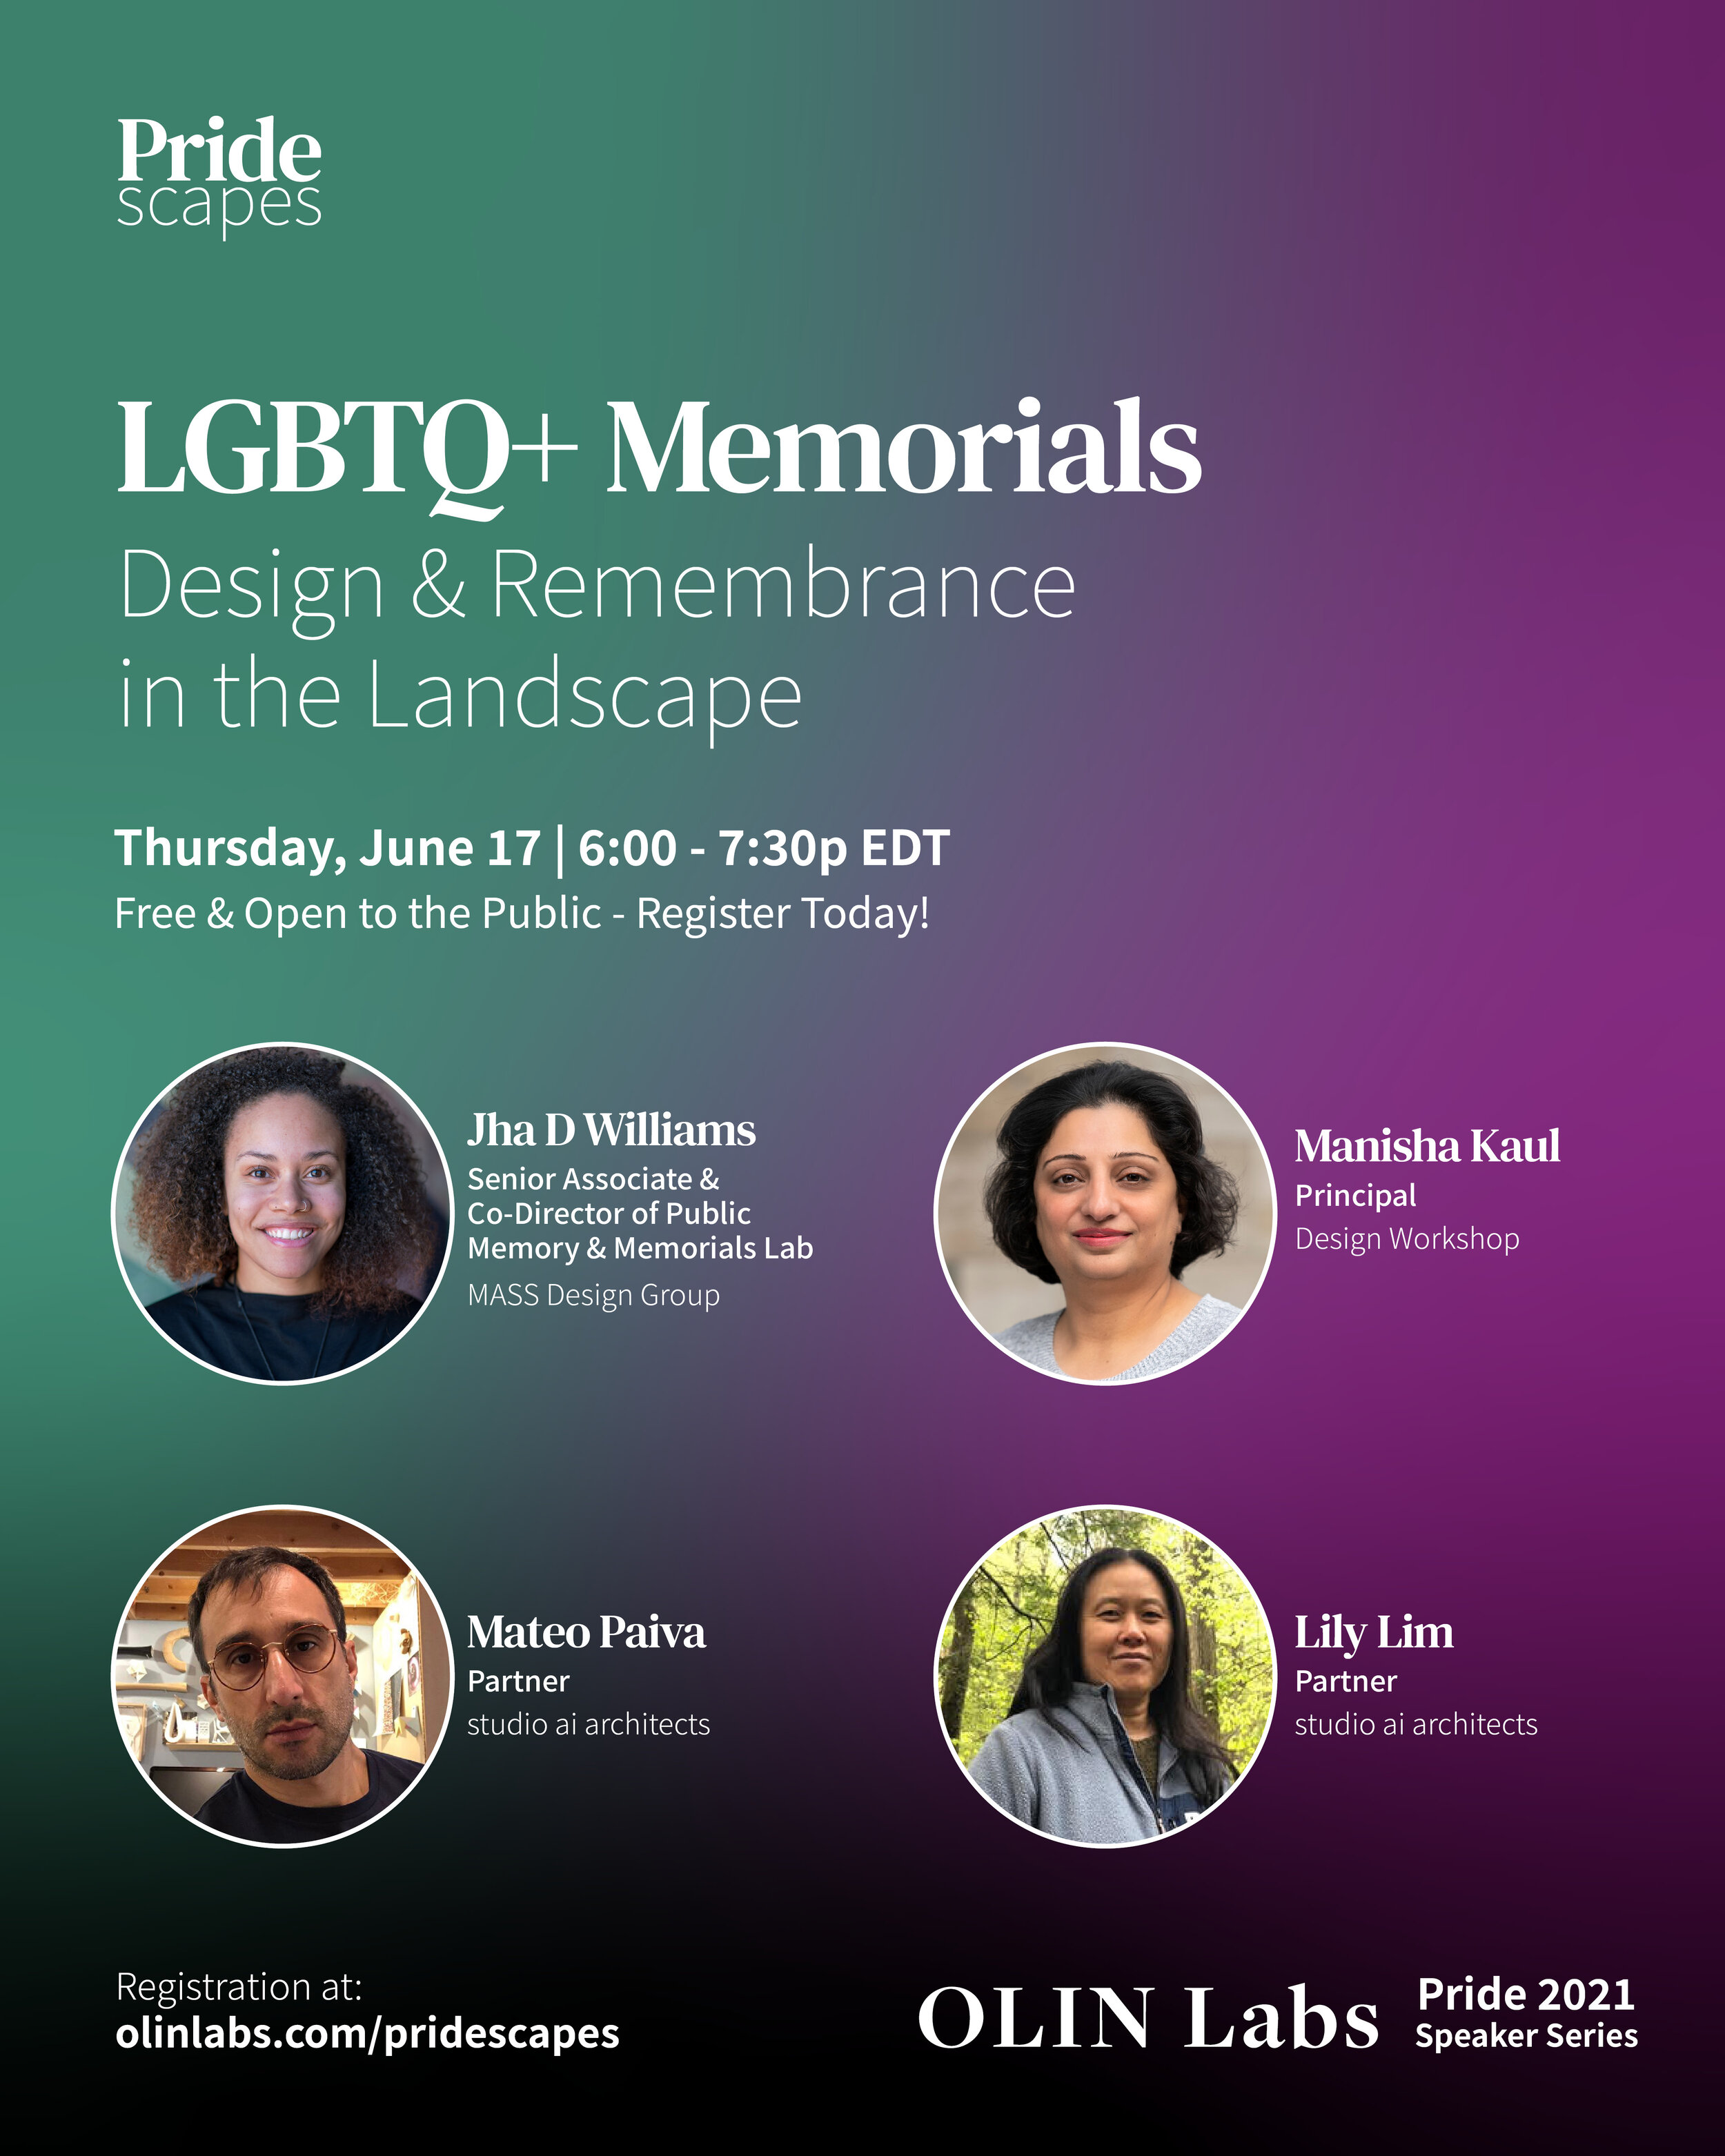 LGBTQ+ Memorials